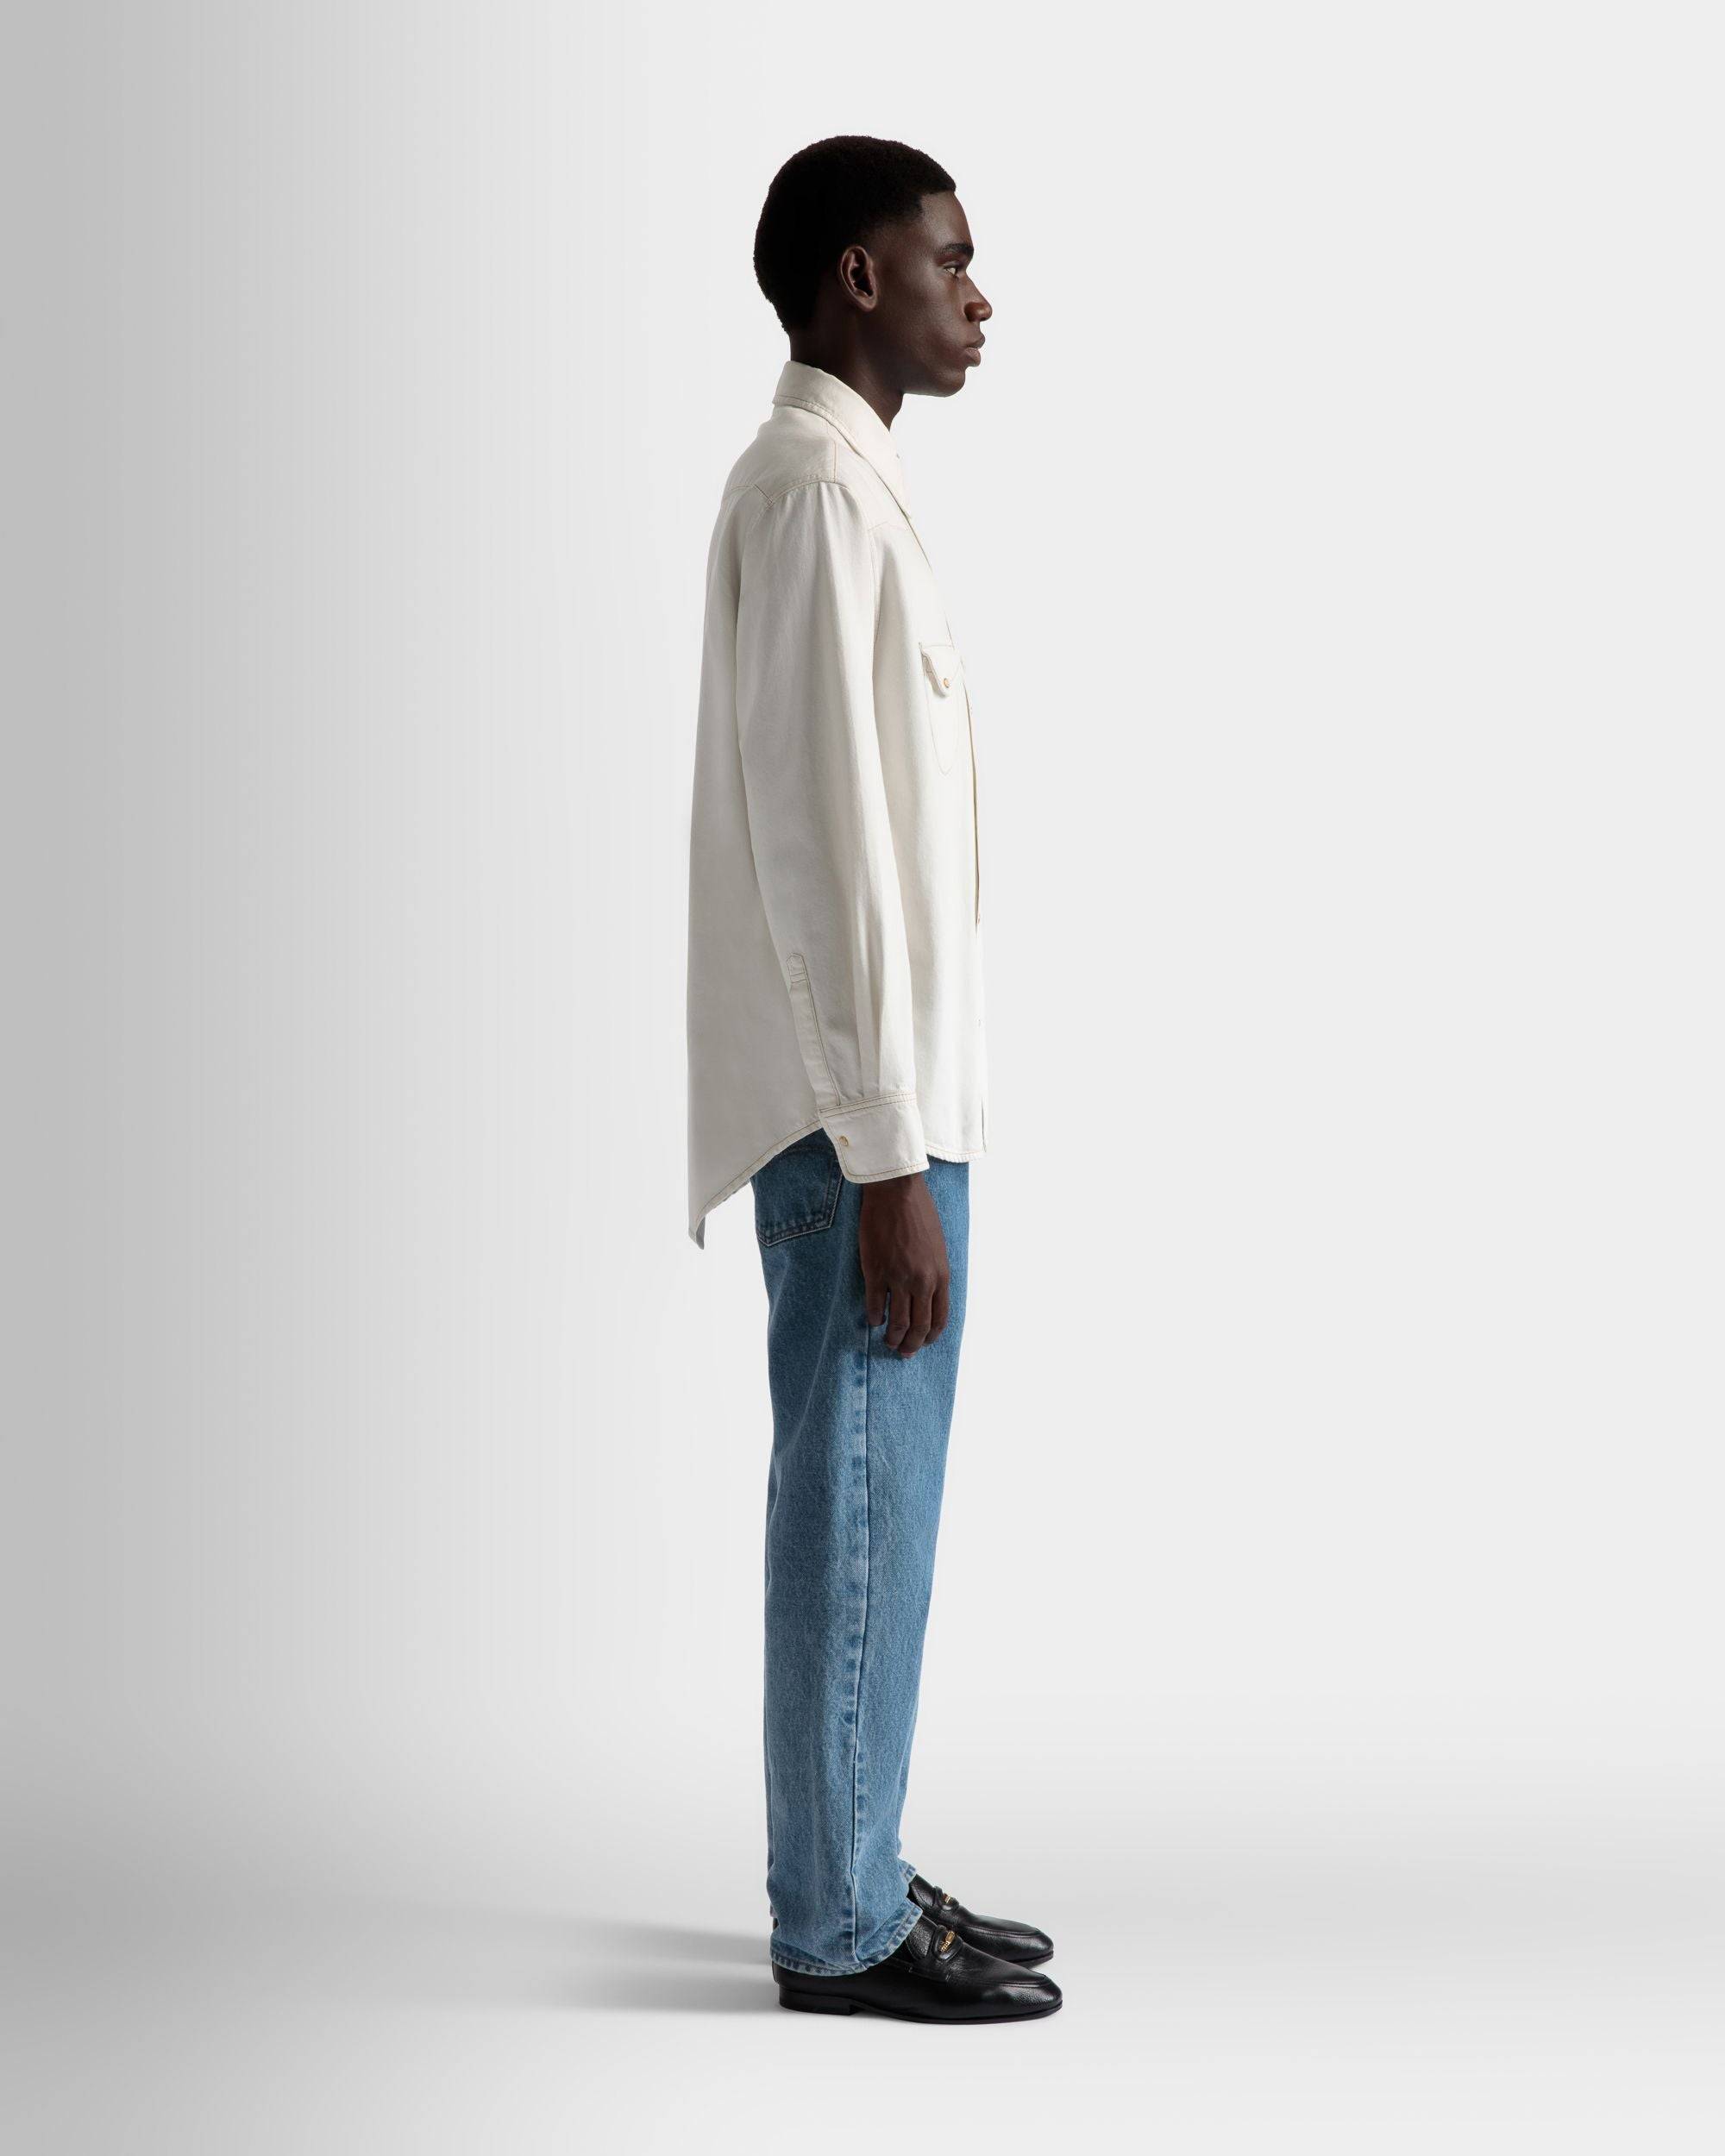 Hemd aus gebleichtem Denim | Herrenhemd | Baumwolle in Elfenbein | Bally | Model getragen 3/4 Vorderseite